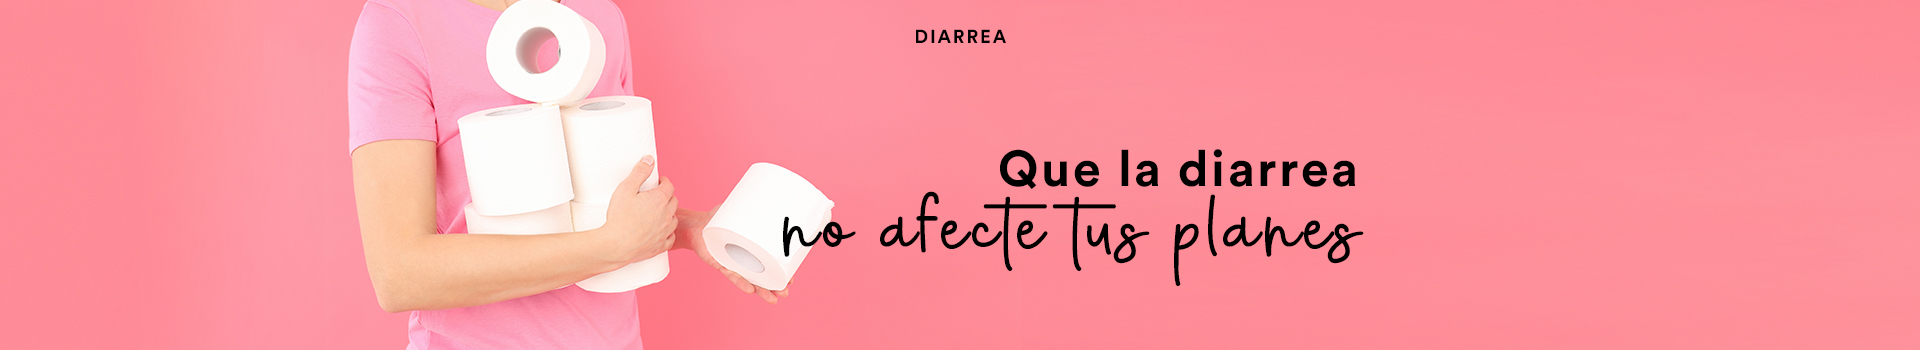 Diarrea_seccion búsqueda productos